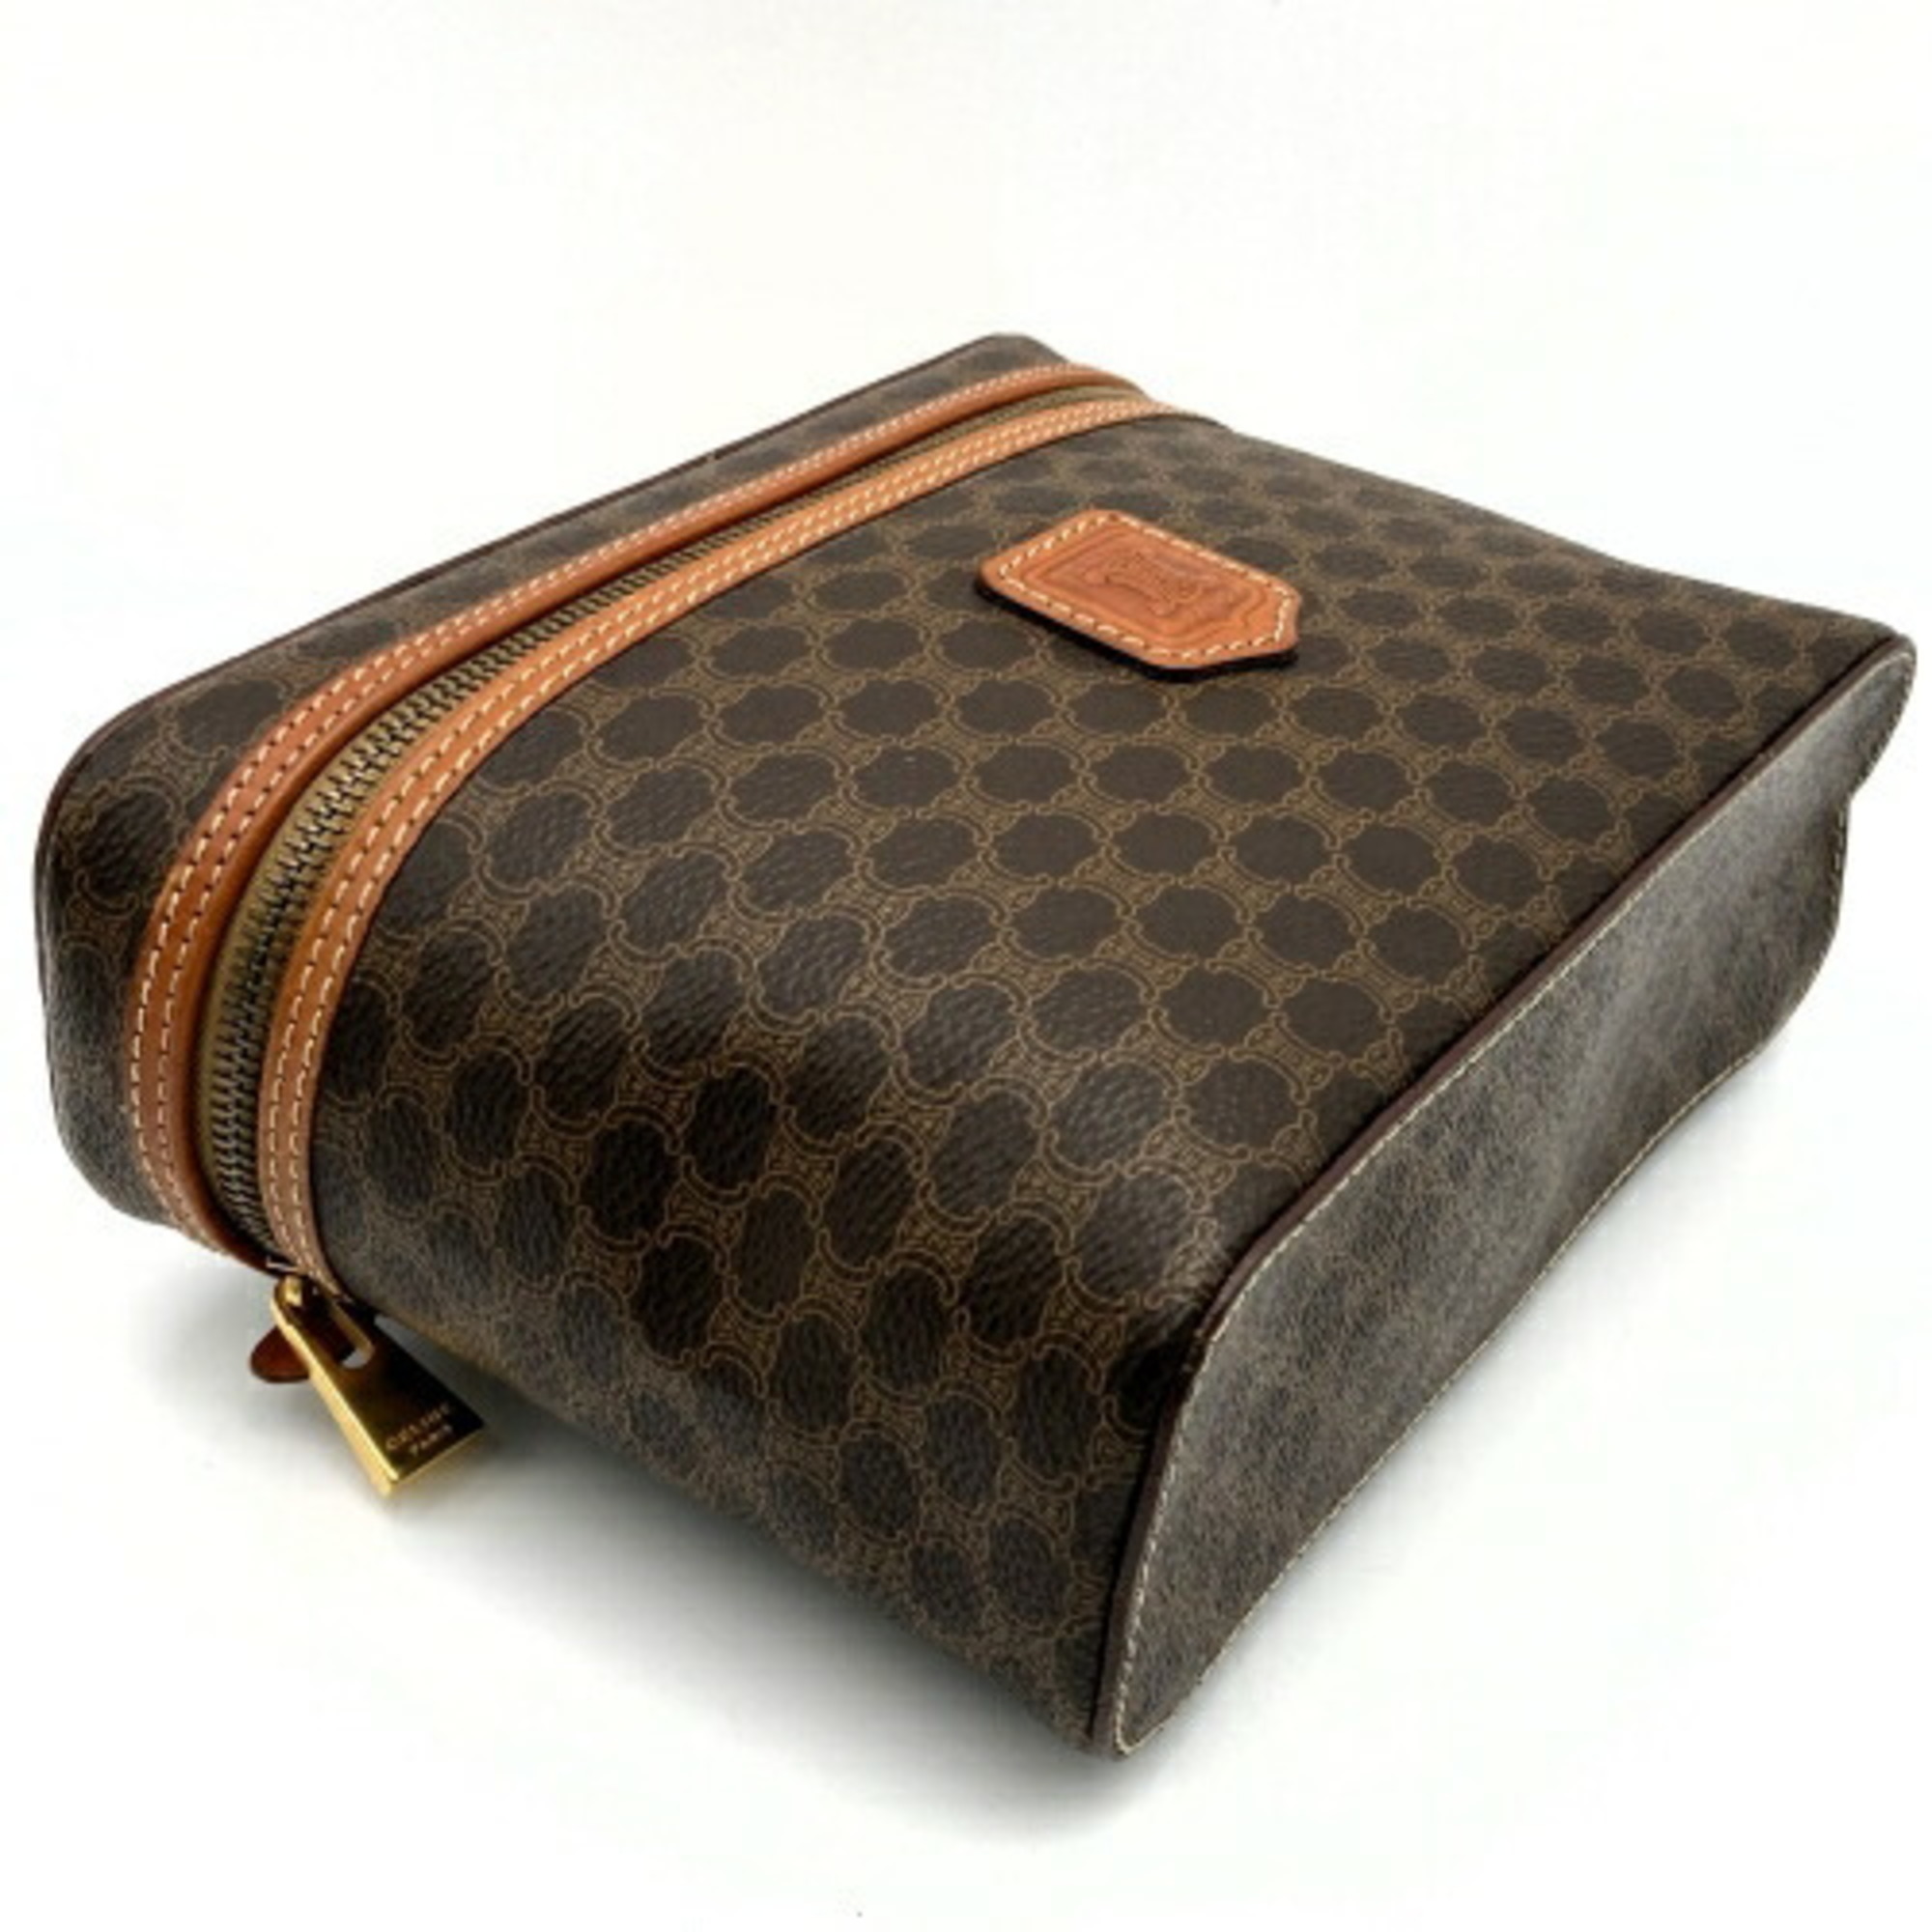 Celine handbag vanity bag with macadam pattern brown leather ladies M95 CELINE